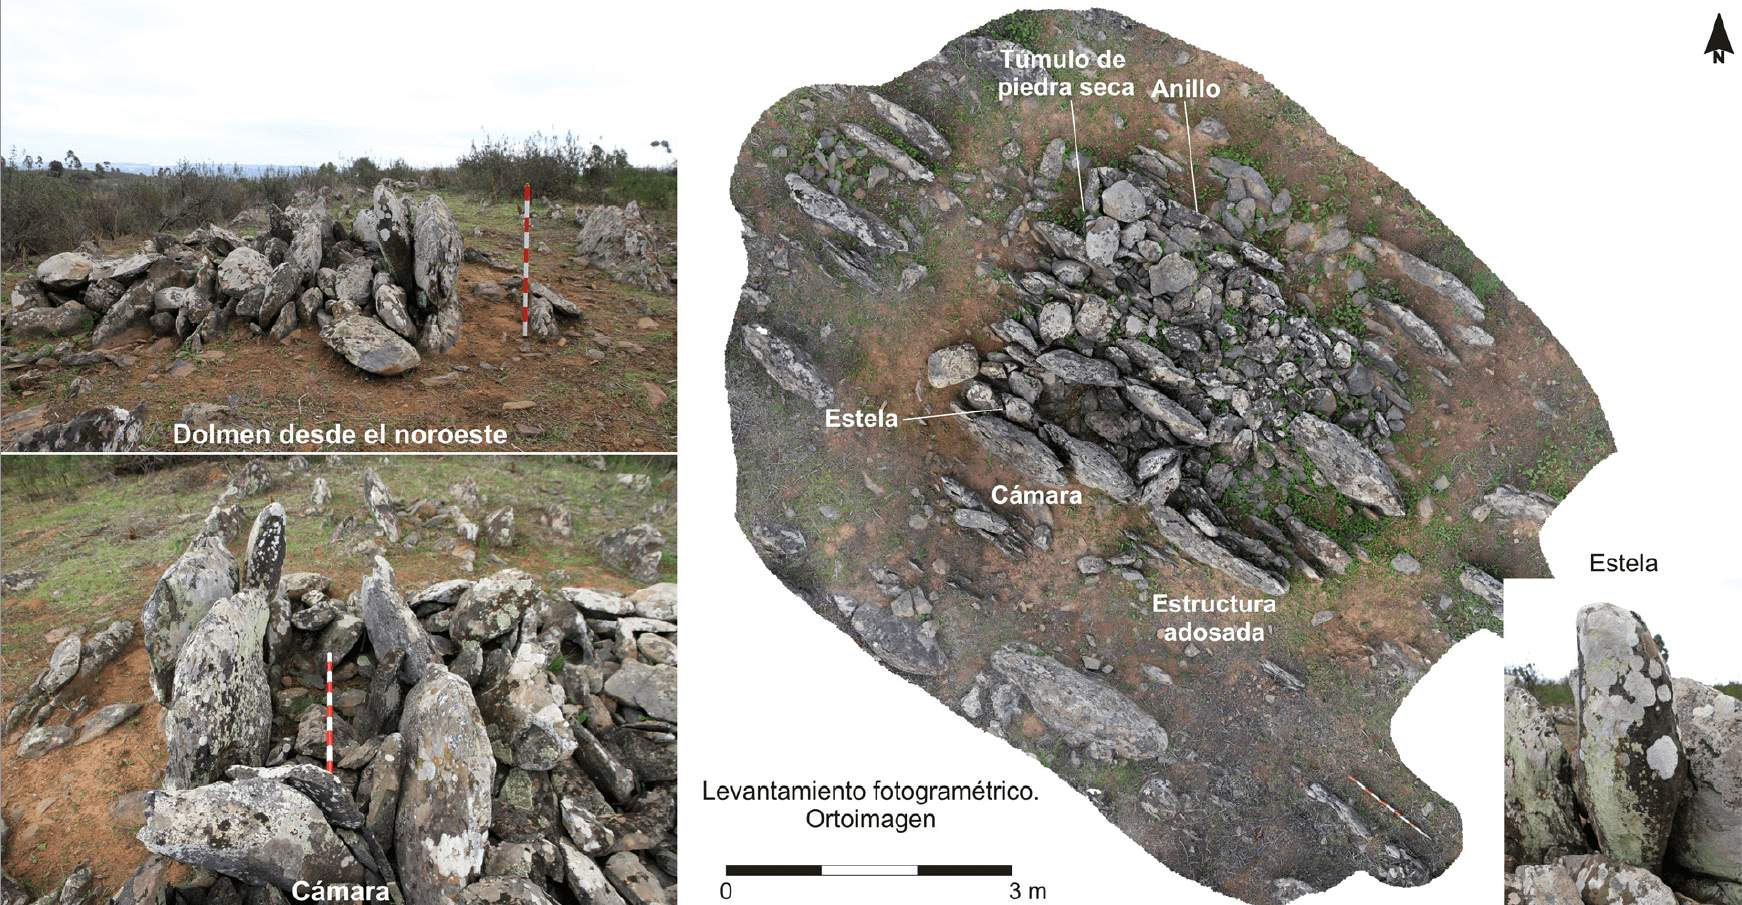 Mchanganyiko mkubwa wa megalithic kutoka 5000 BC uligunduliwa nchini Uhispania 4